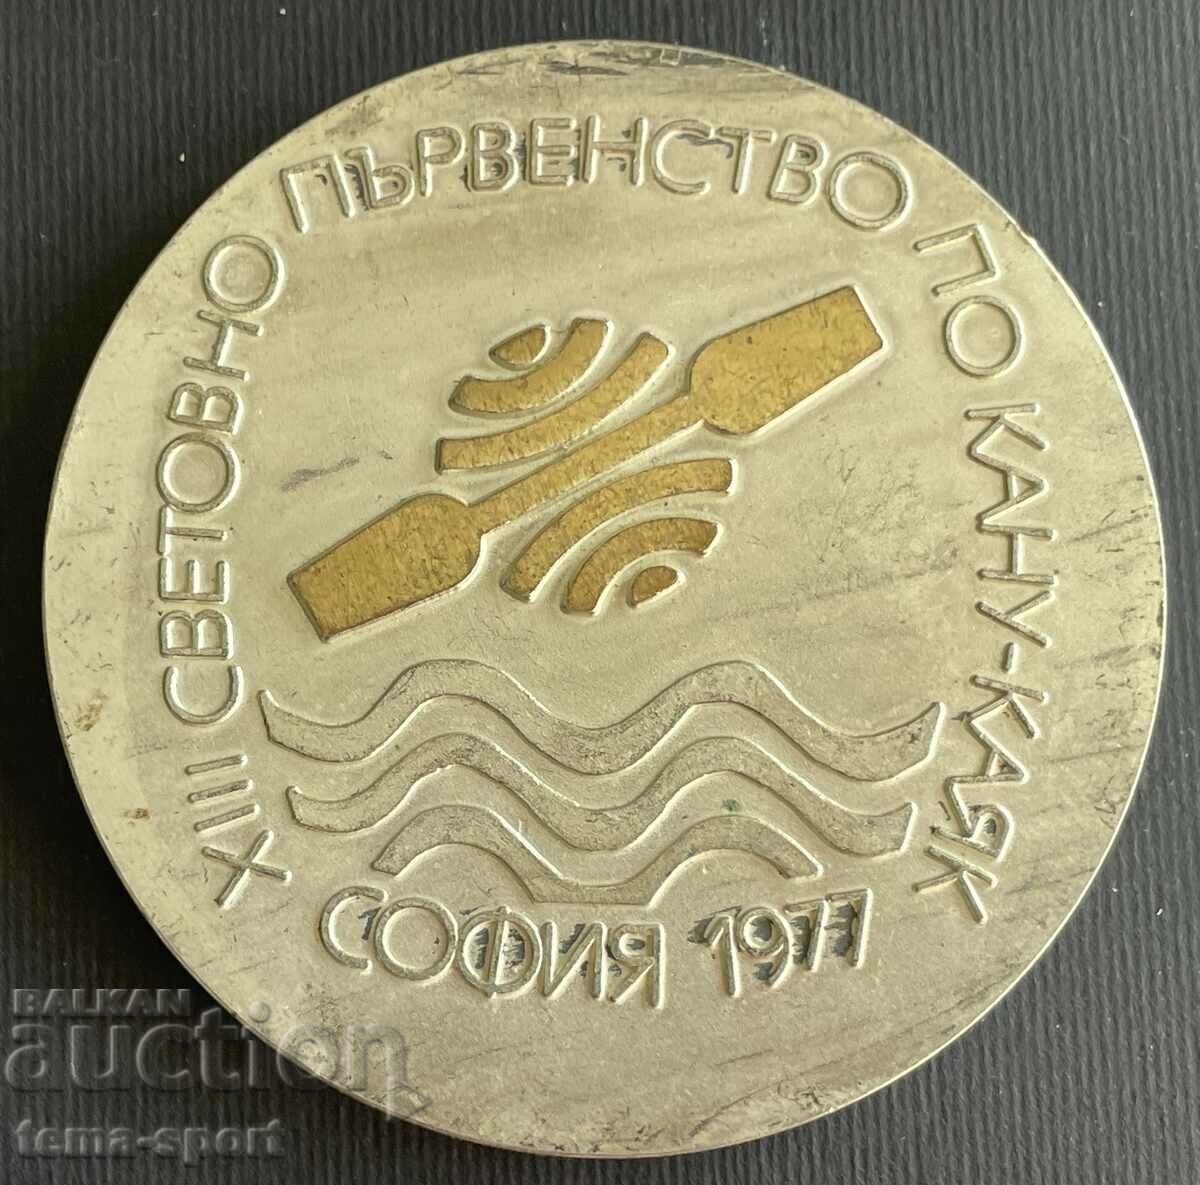 47 Πλακέτα Βουλγαρίας Παγκόσμιο Πρωτάθλημα Κανόε Καγιάκ Σόφια 1977